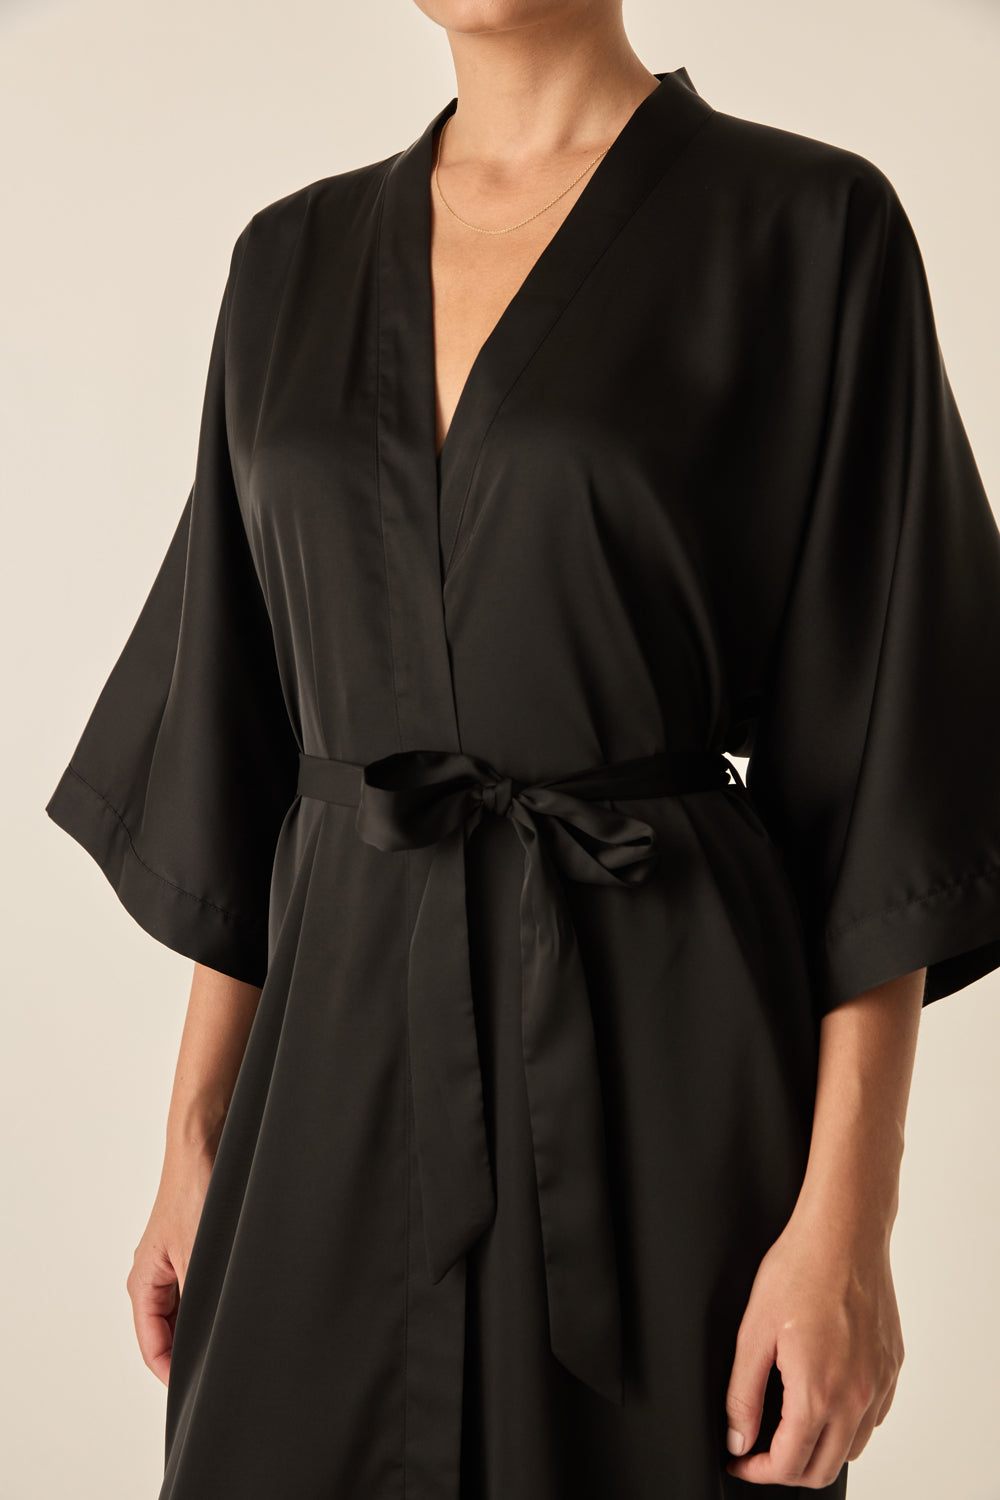 Bethany Black Silky Satin Robe